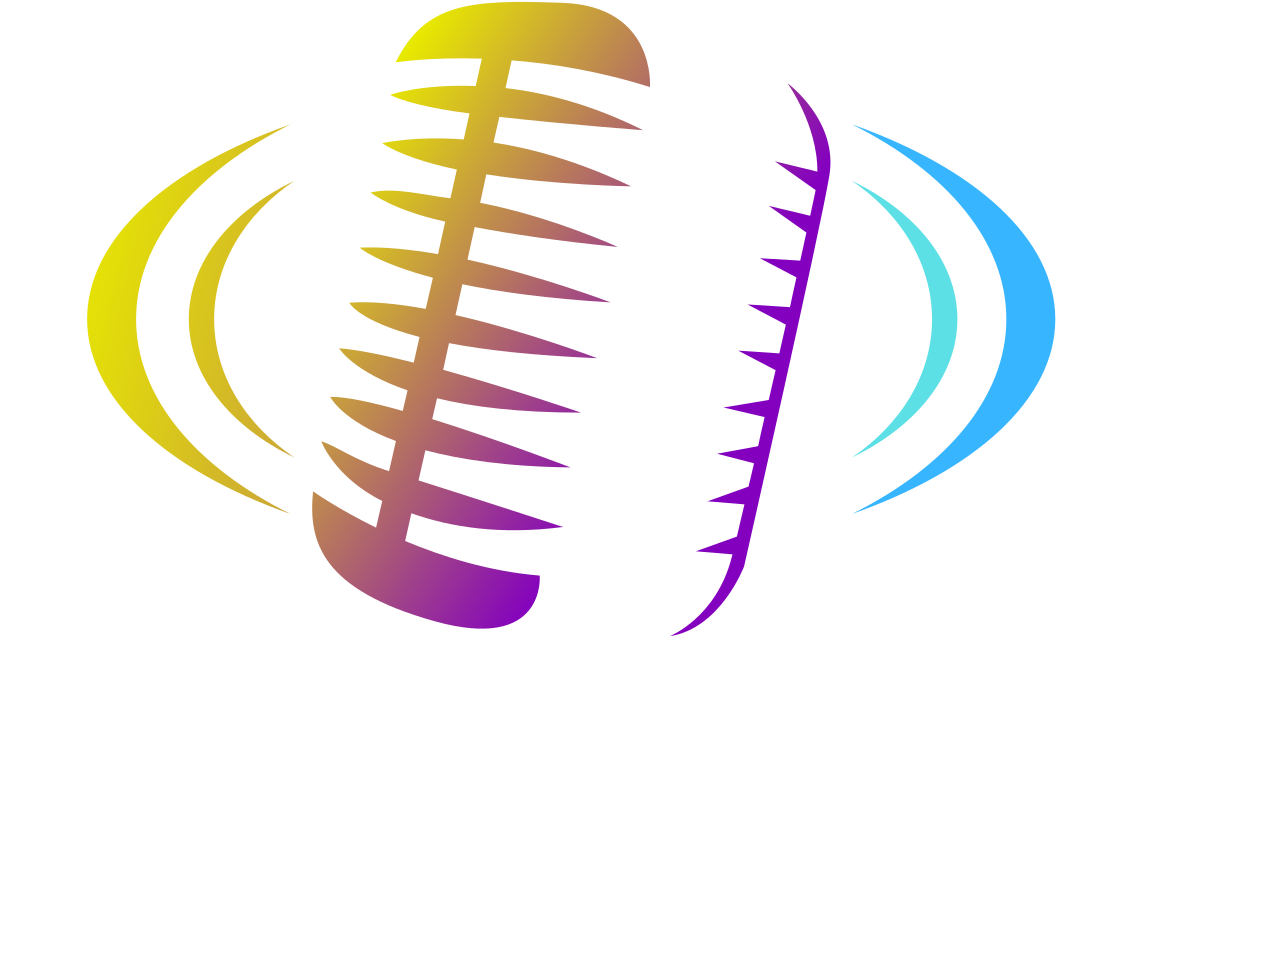 Rogie VOA 's logo